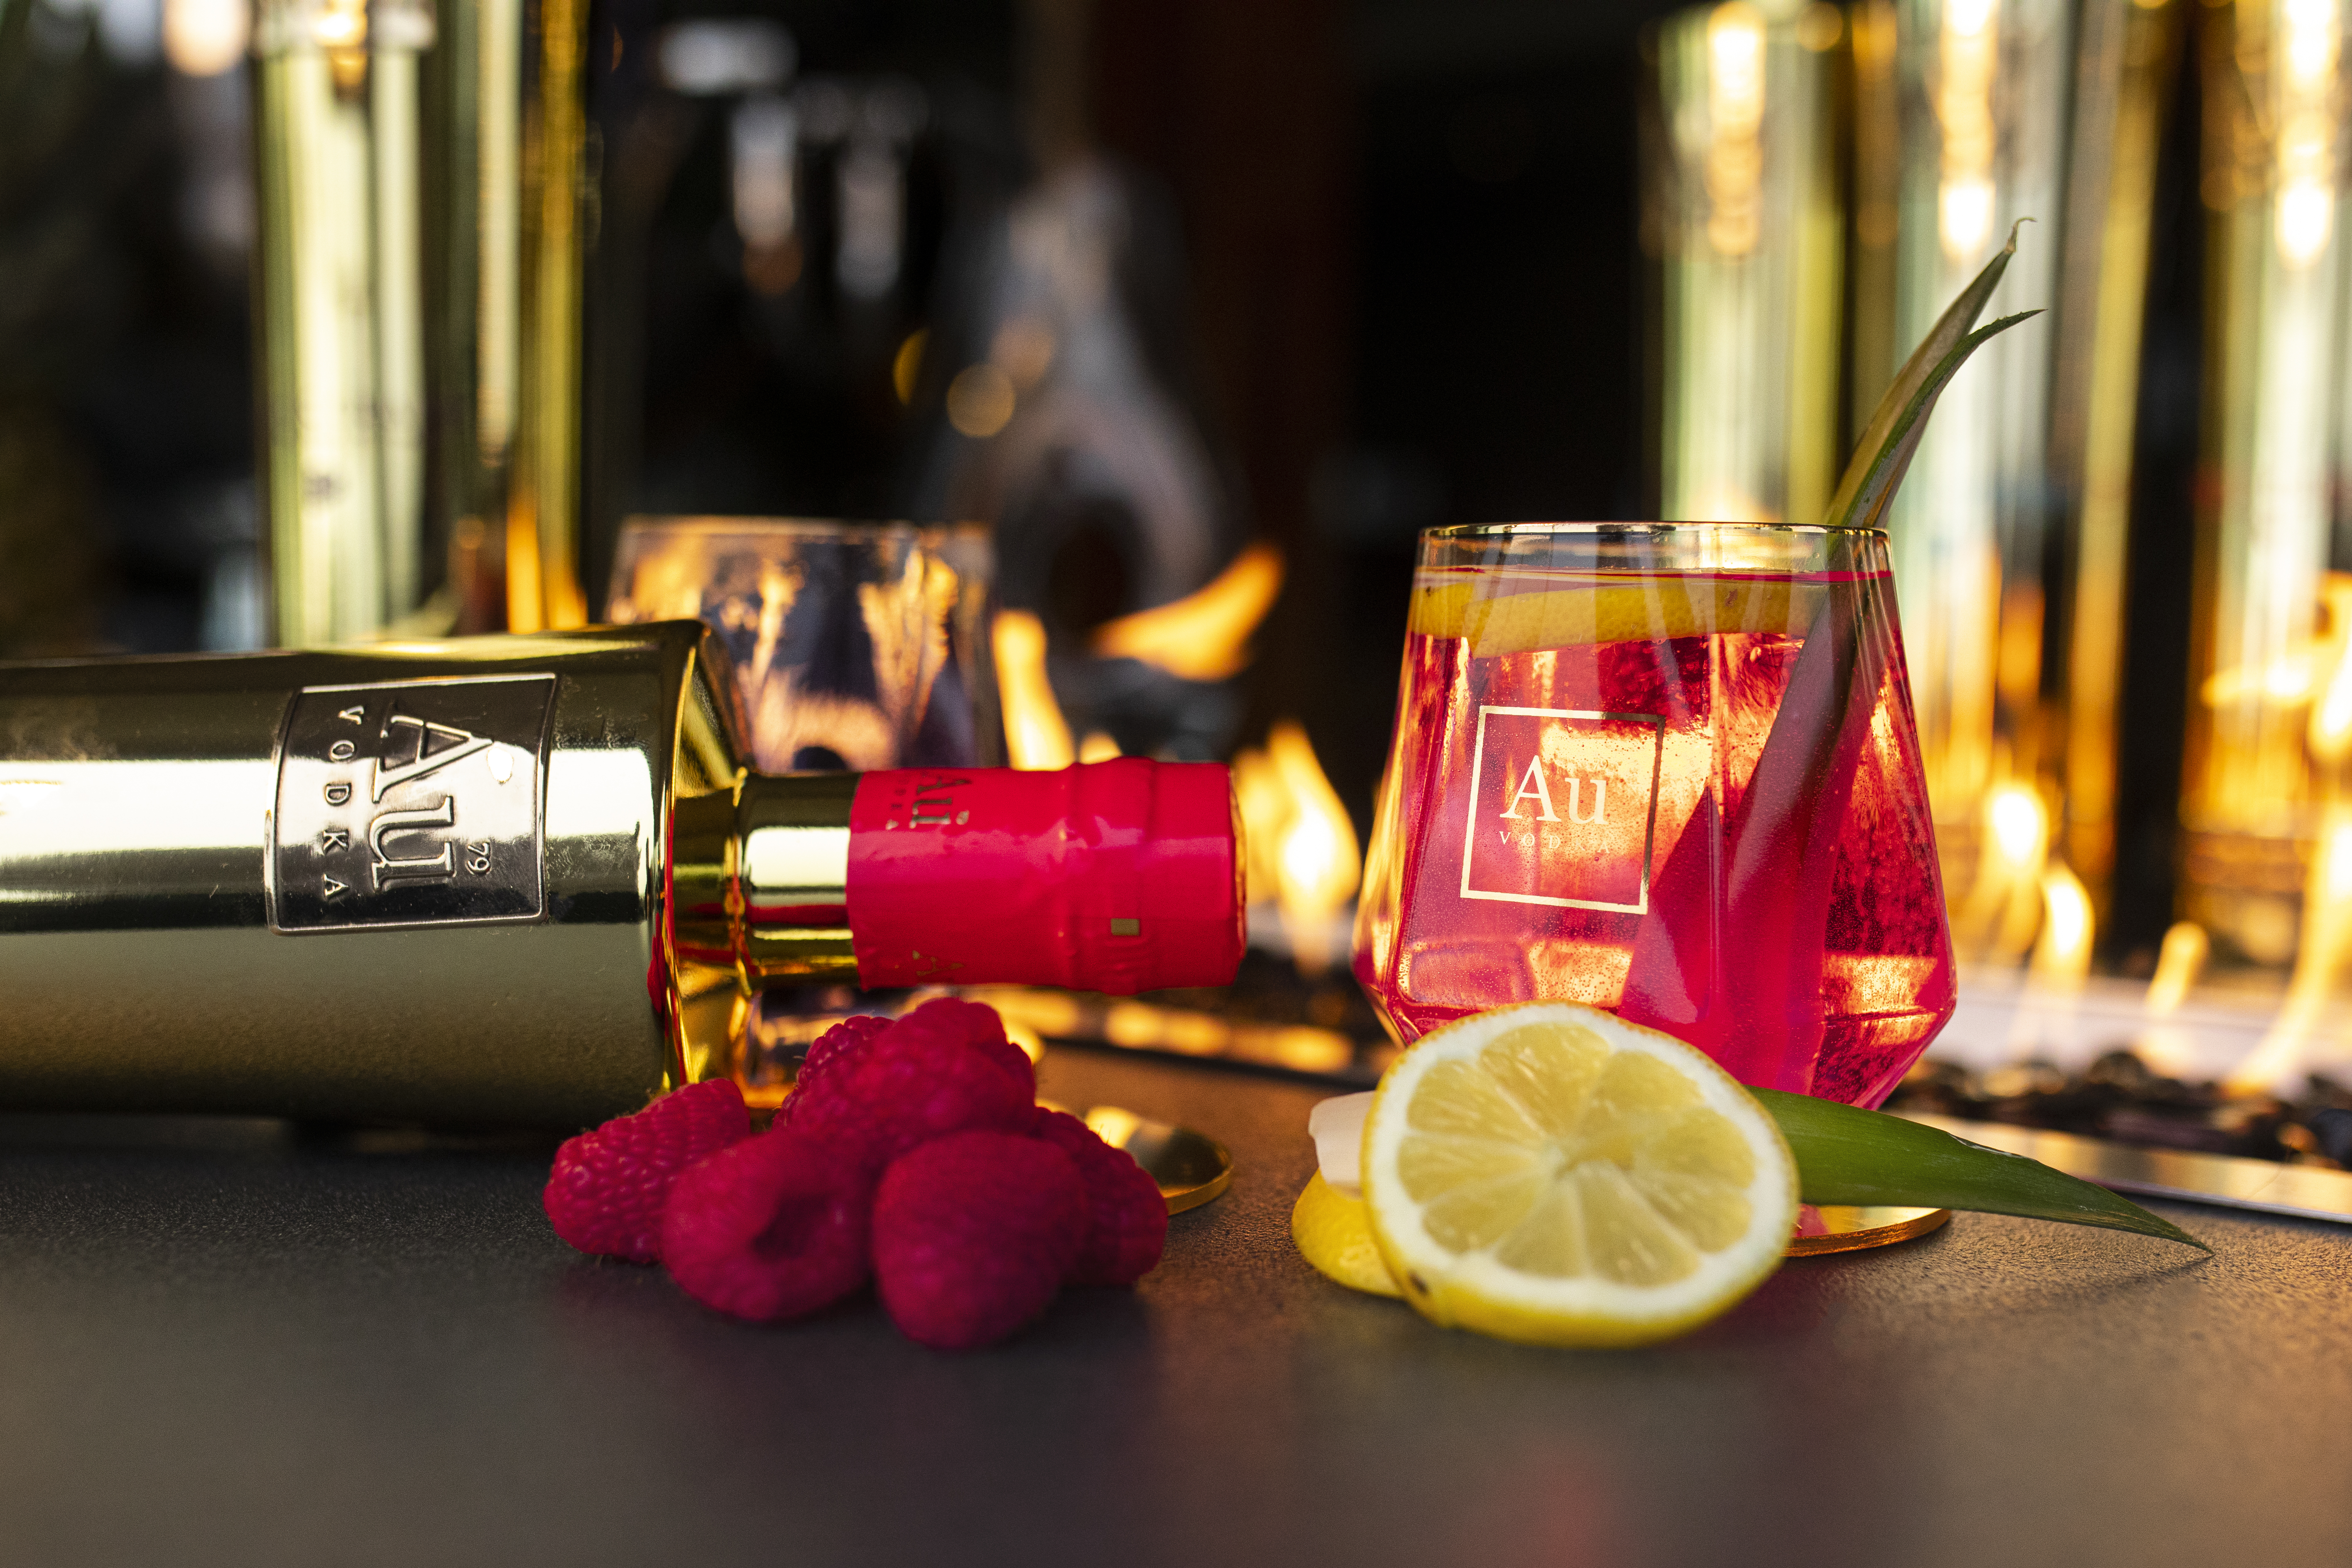 AU Vodka Geschenkset Fruit Punch 0,7L (35,2% Vol) mit 2x Au Glas/Tumbler im Diamantenschliff und Ausgießer - aromatisierte Wodka Spirituose Fruchtmix- [Enthält Sulfite]